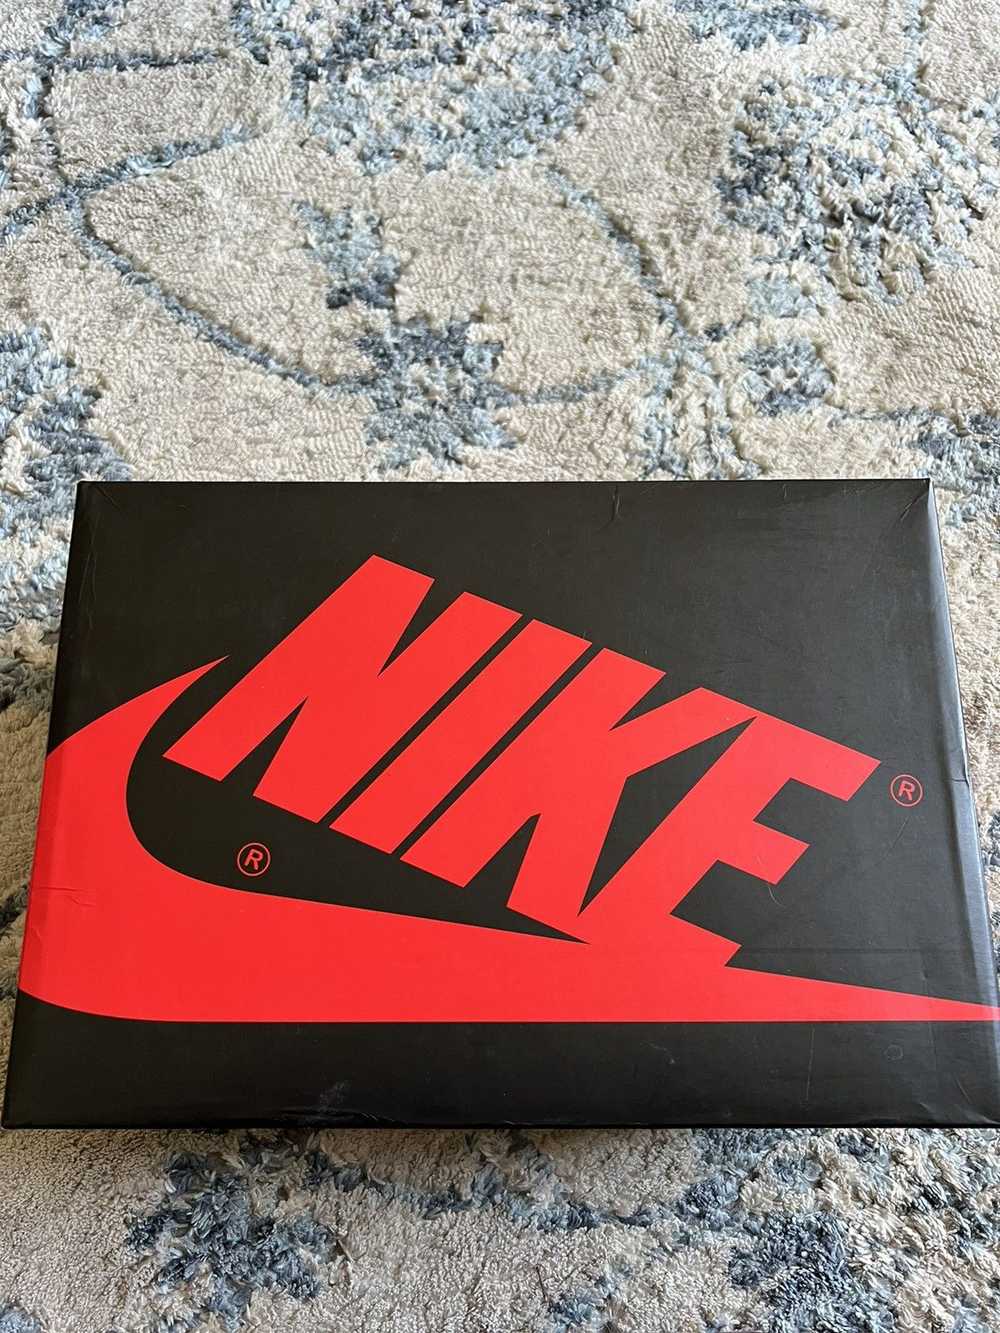 Jordan Brand × Nike Jordan 1 Bred Toe - image 9